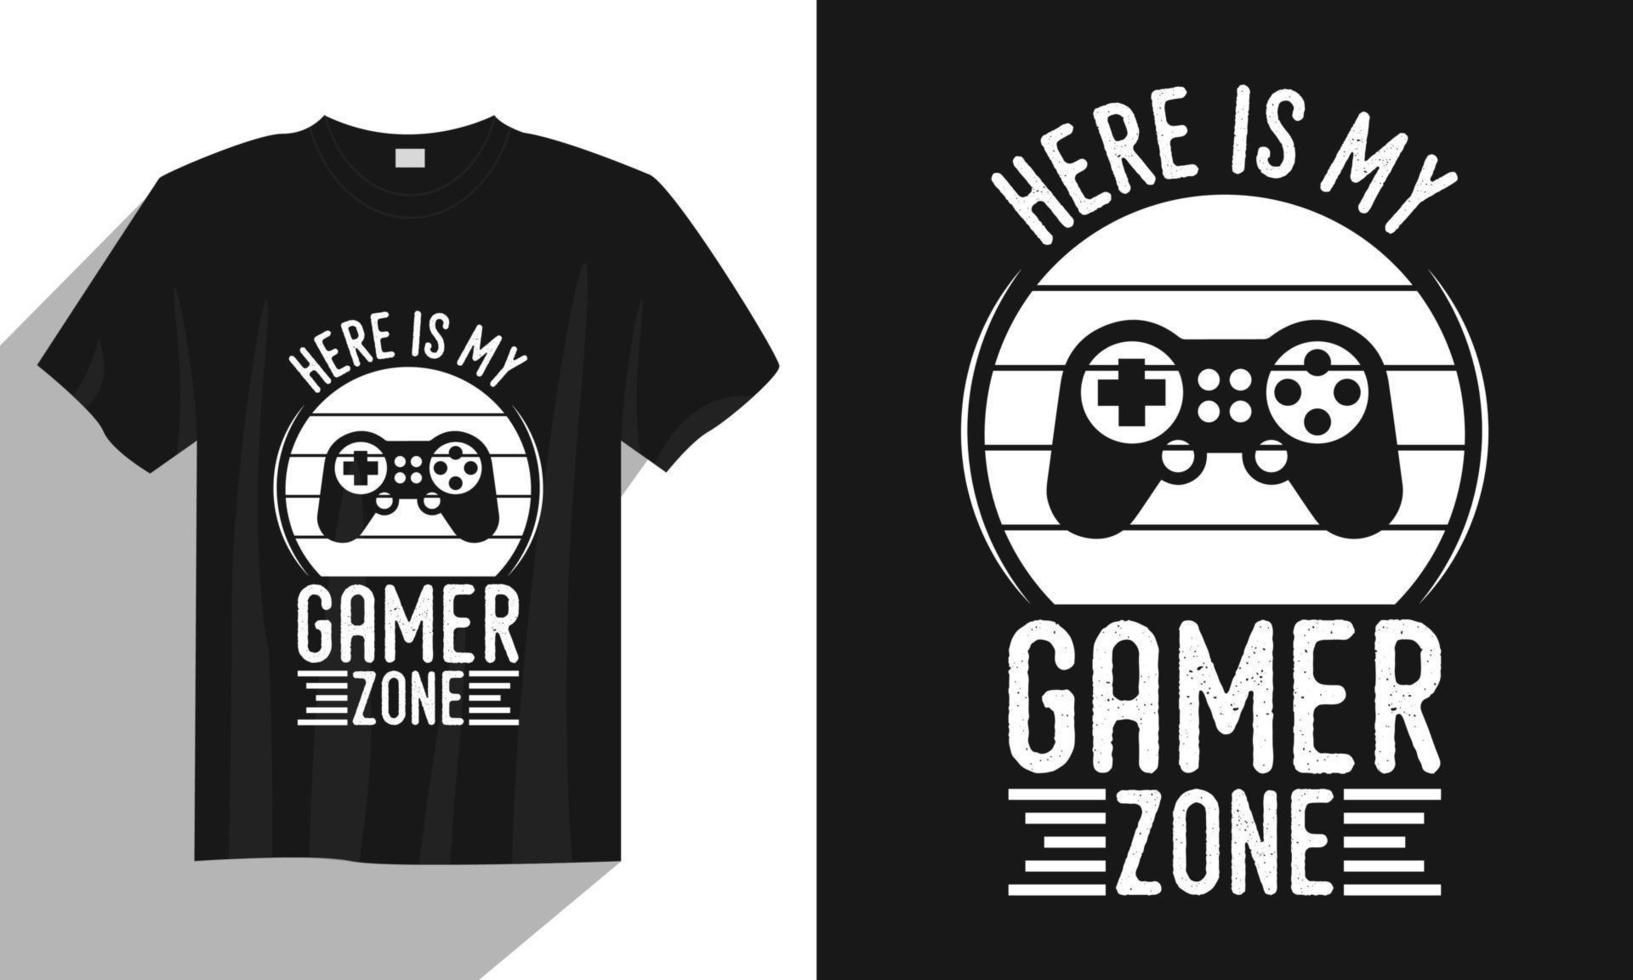 Hier ist mein Gamer-Zone-Gaming-T-Shirt-Design, Gaming-Gamer-T-Shirt-Design, Vintage-Gaming-T-Shirt-Design, Typografie-Gaming-T-Shirt-Design, Retro-Gaming-Gamer-T-Shirt-Design vektor